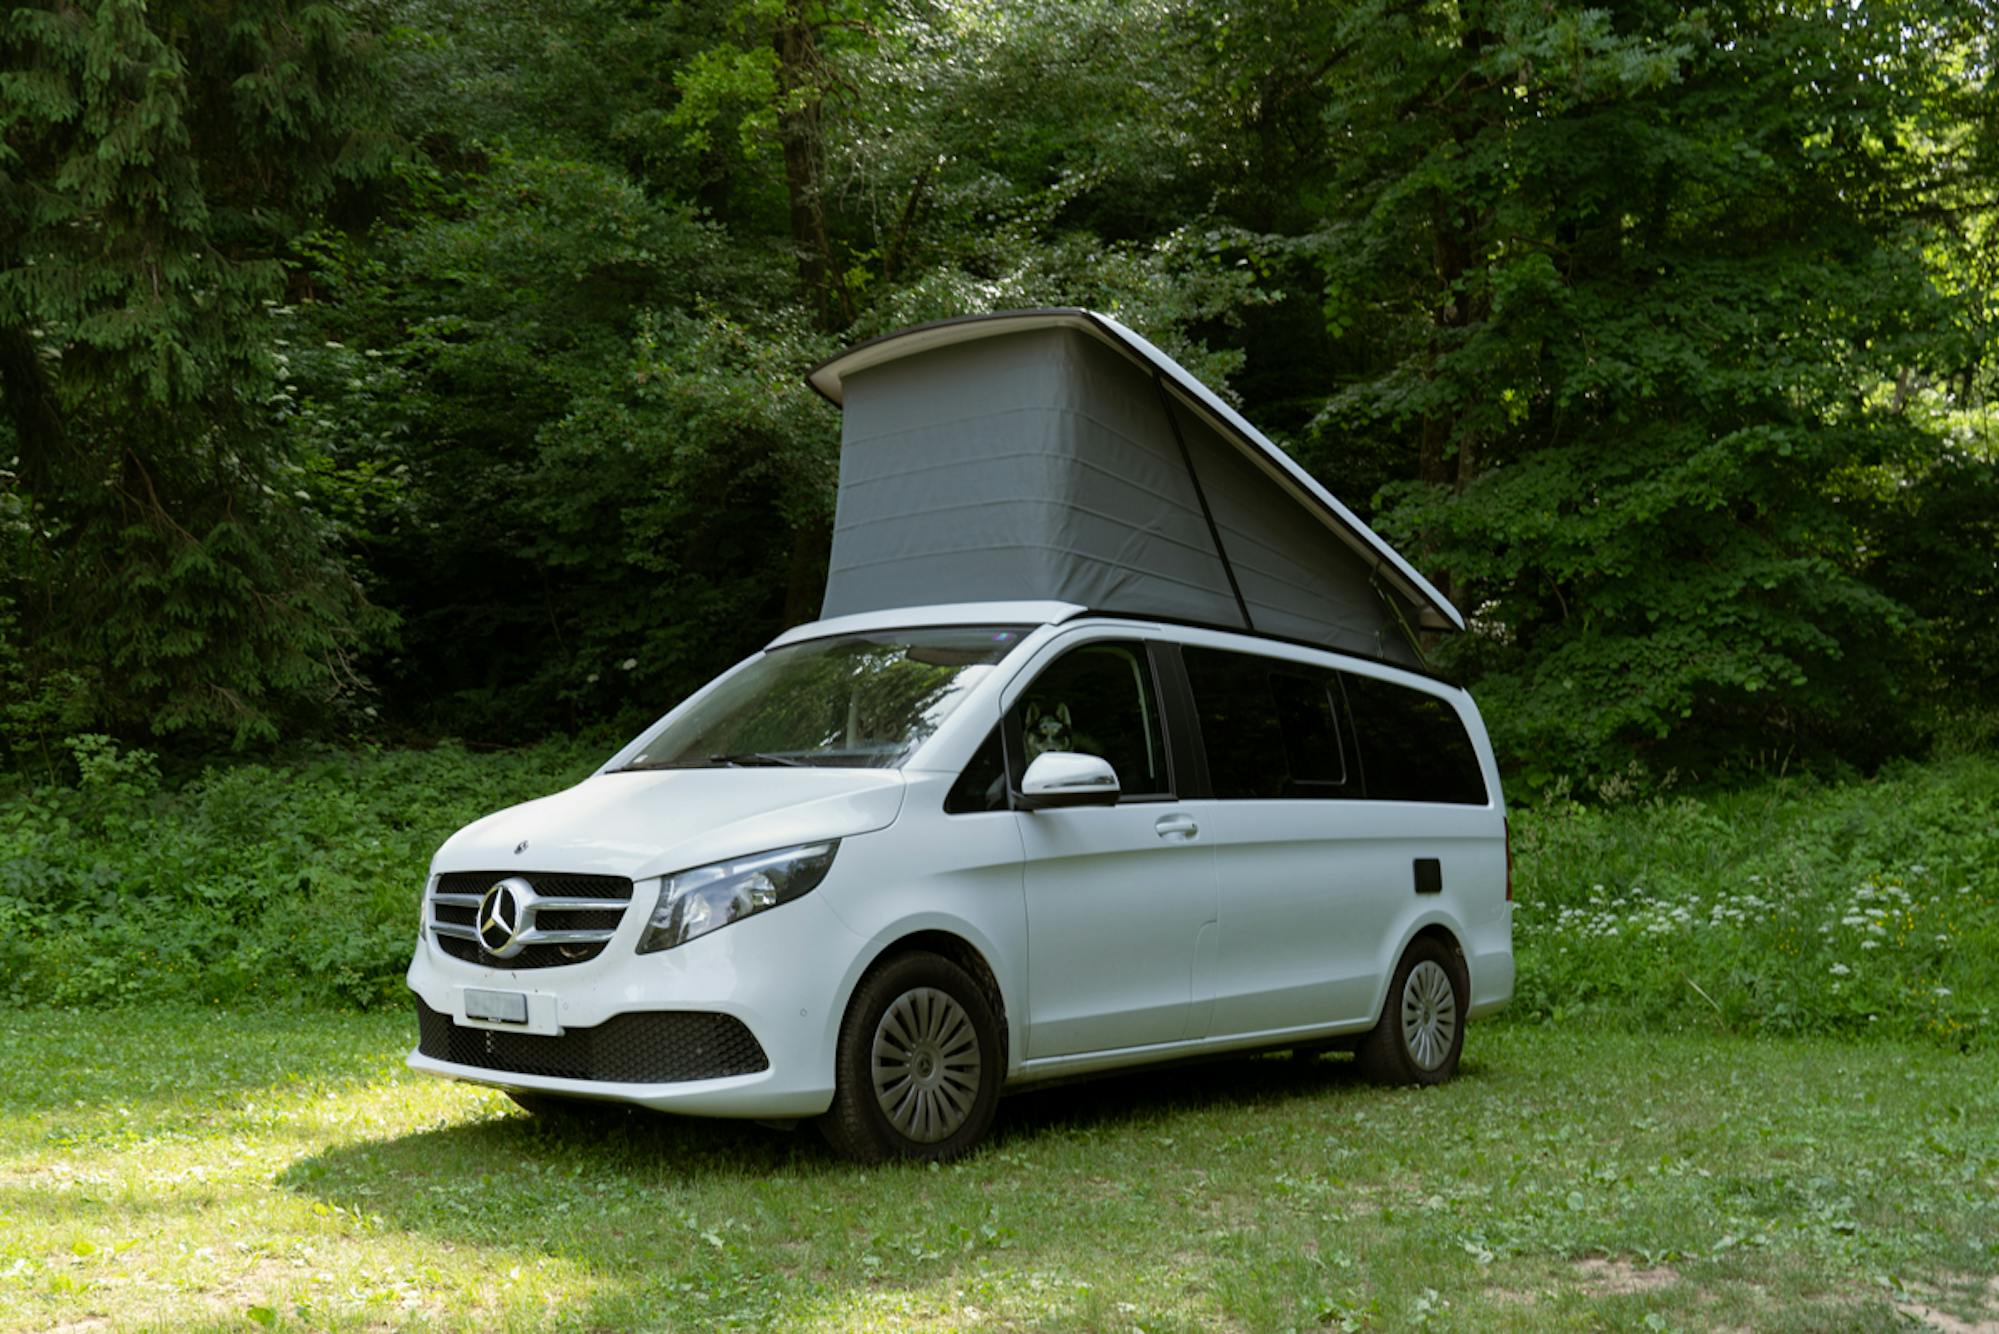 Mercedes Vito Campervan - We Buy Any Motorcaravan